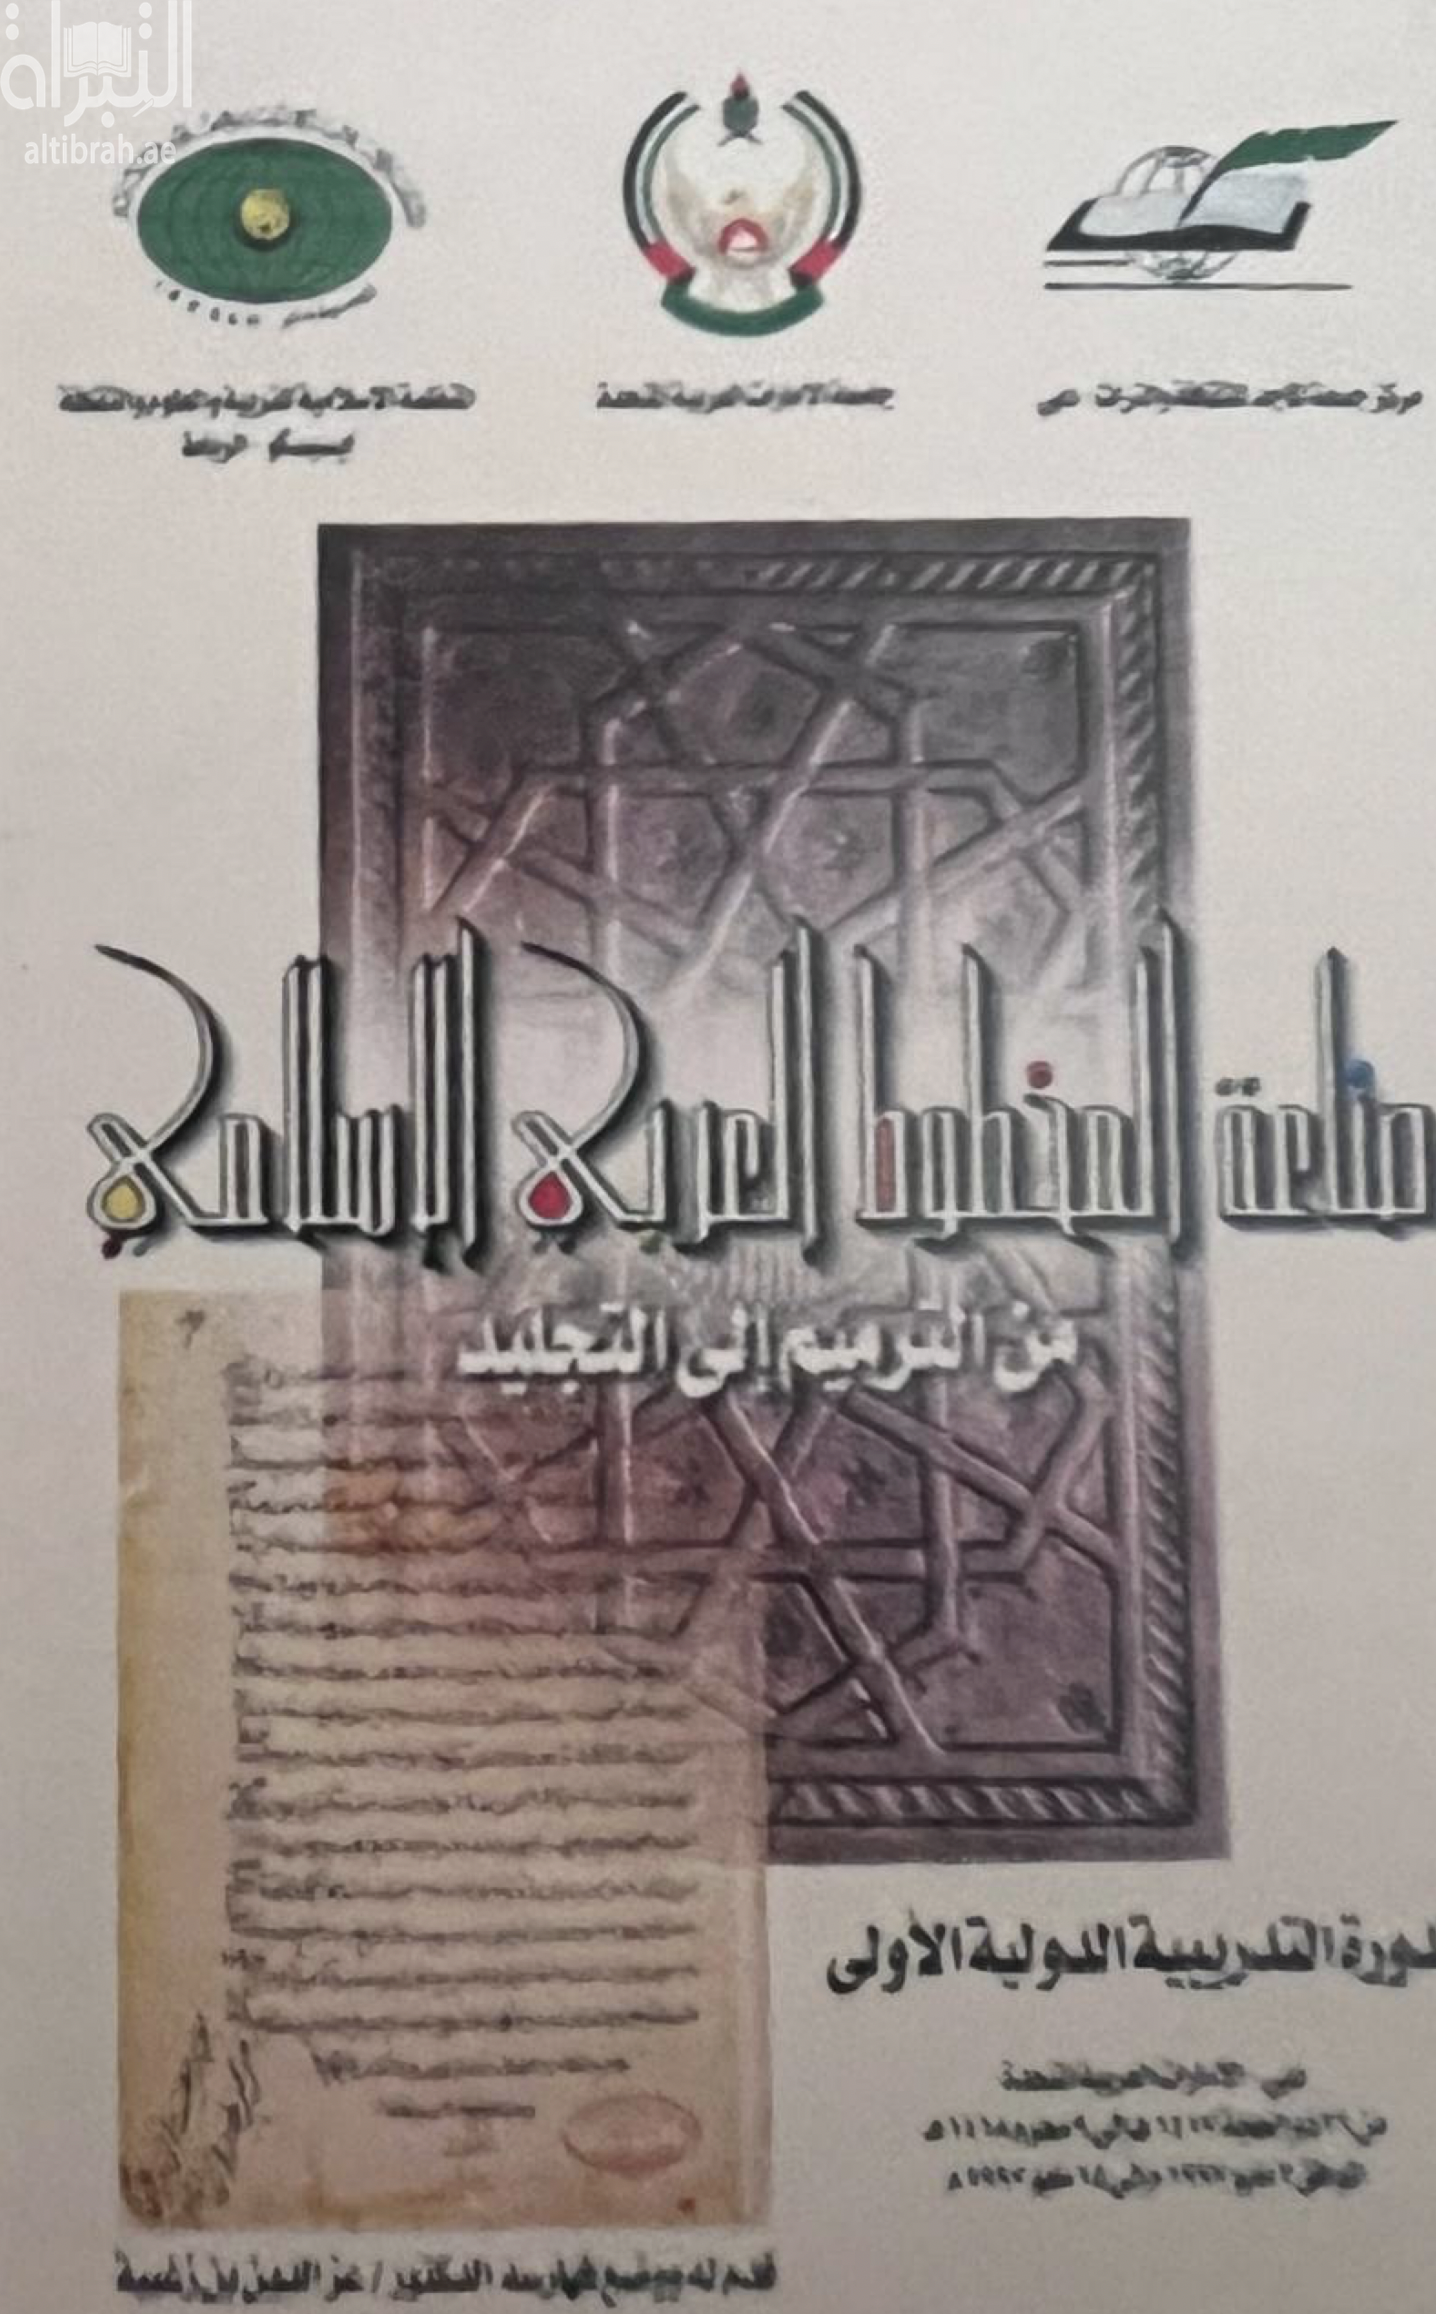 صناعة المخطوط العربي الإسلامي من الترميم إلى التجليد : الدورة التدريبية الدولية الأولى